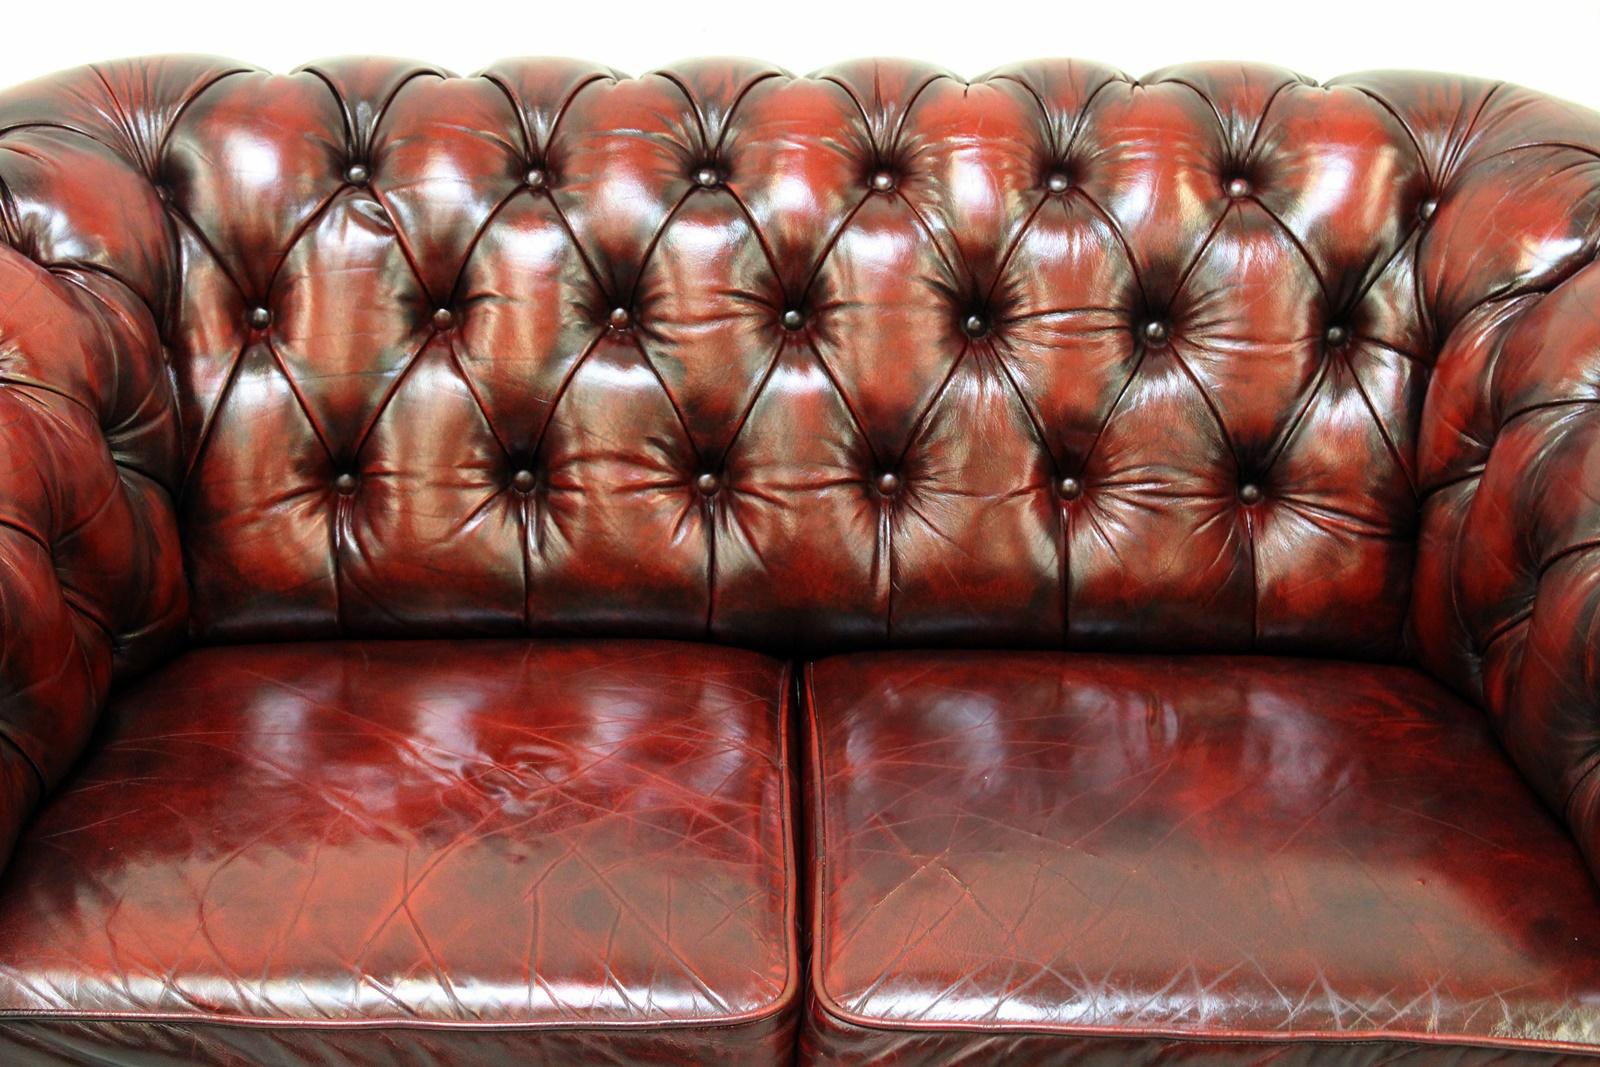 Chesterfield echt Leder Zweier Sofa
in originellem Design
Sehr bequem und mit wuderschönen Patina
Zustand: Das Sofa ist in einem SEHR gutem Zustand
Sofa
Measures: H x 78cm, L x 155cm, T x 90cm
Polster ist in einem gutem zustand mit